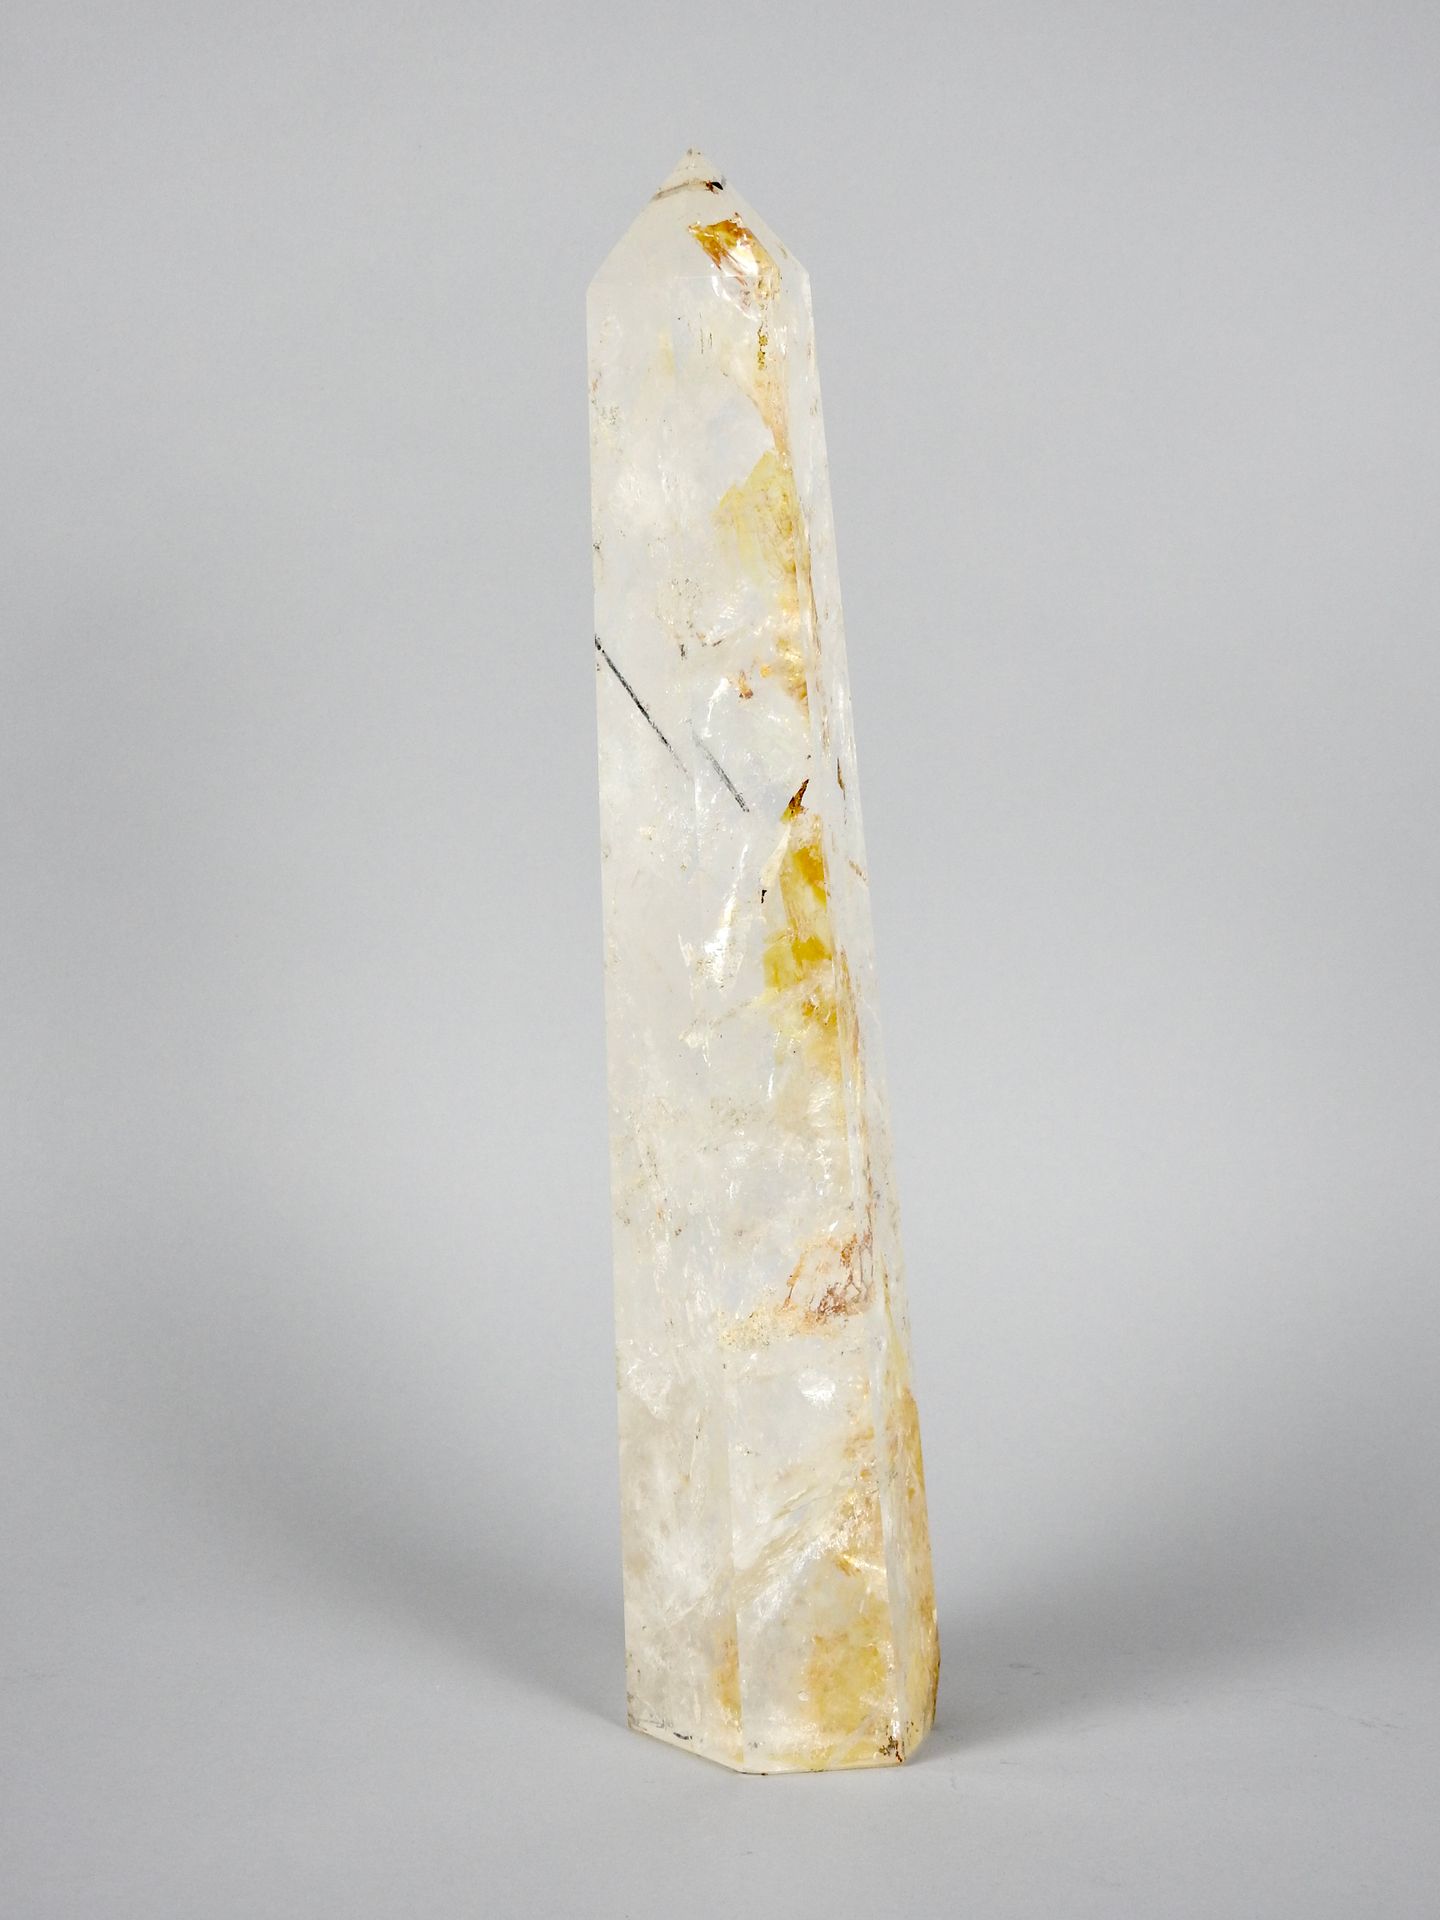 Null Monolithe poli et facetté Quartz cristal de roche

H 36 cm